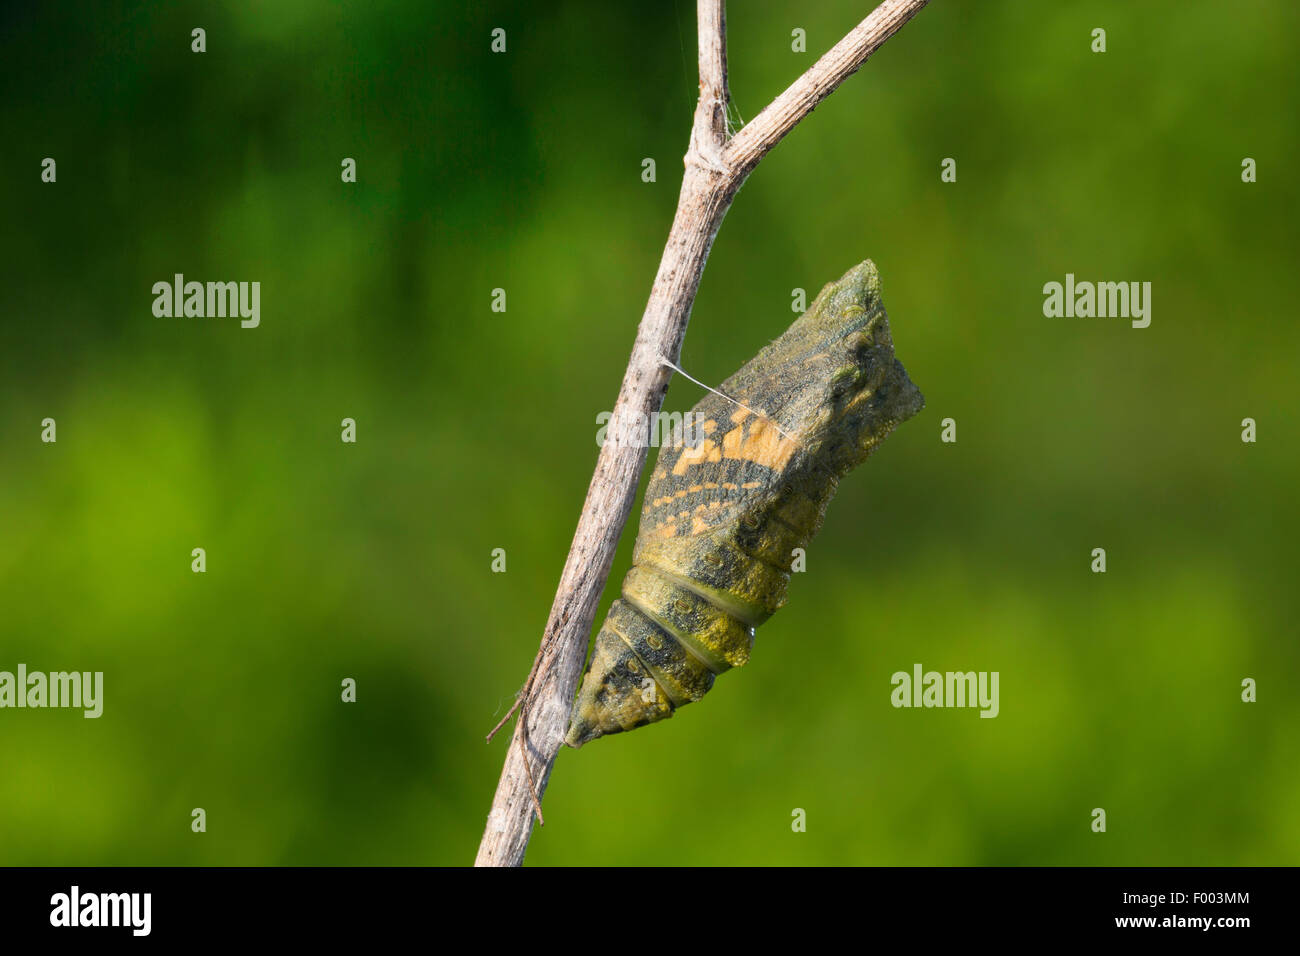 Especie (Papilio machaon), pupa a punto de eclosionar, brilla a través de la mariposa, Alemania Foto de stock